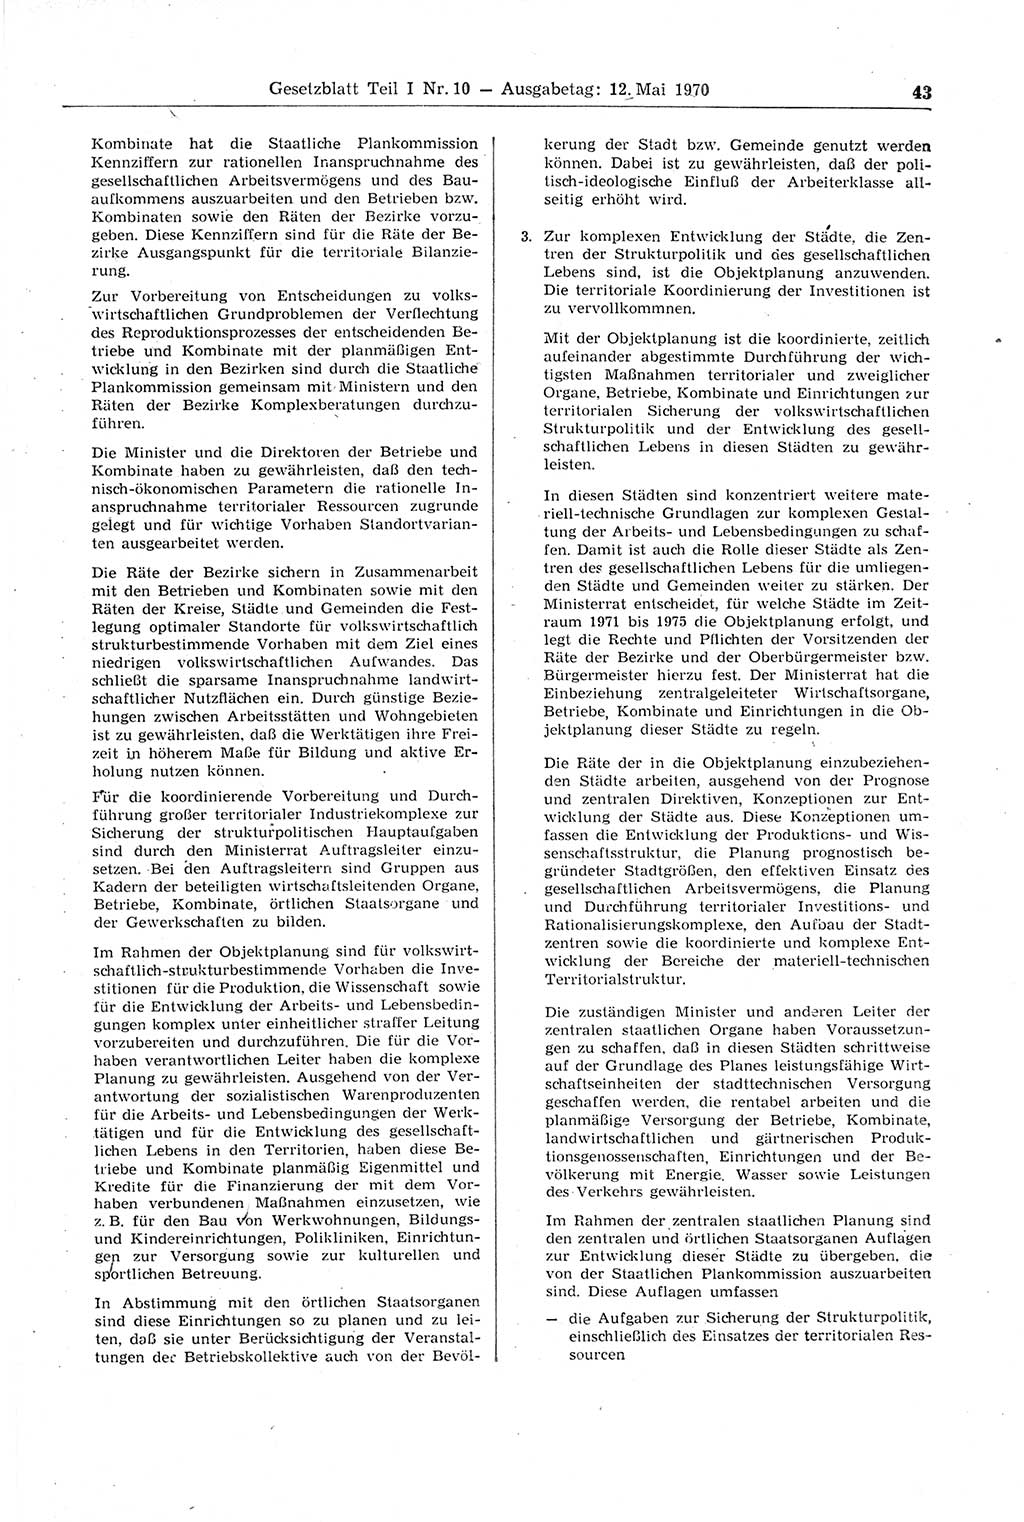 Gesetzblatt (GBl.) der Deutschen Demokratischen Republik (DDR) Teil Ⅰ 1970, Seite 43 (GBl. DDR Ⅰ 1970, S. 43)